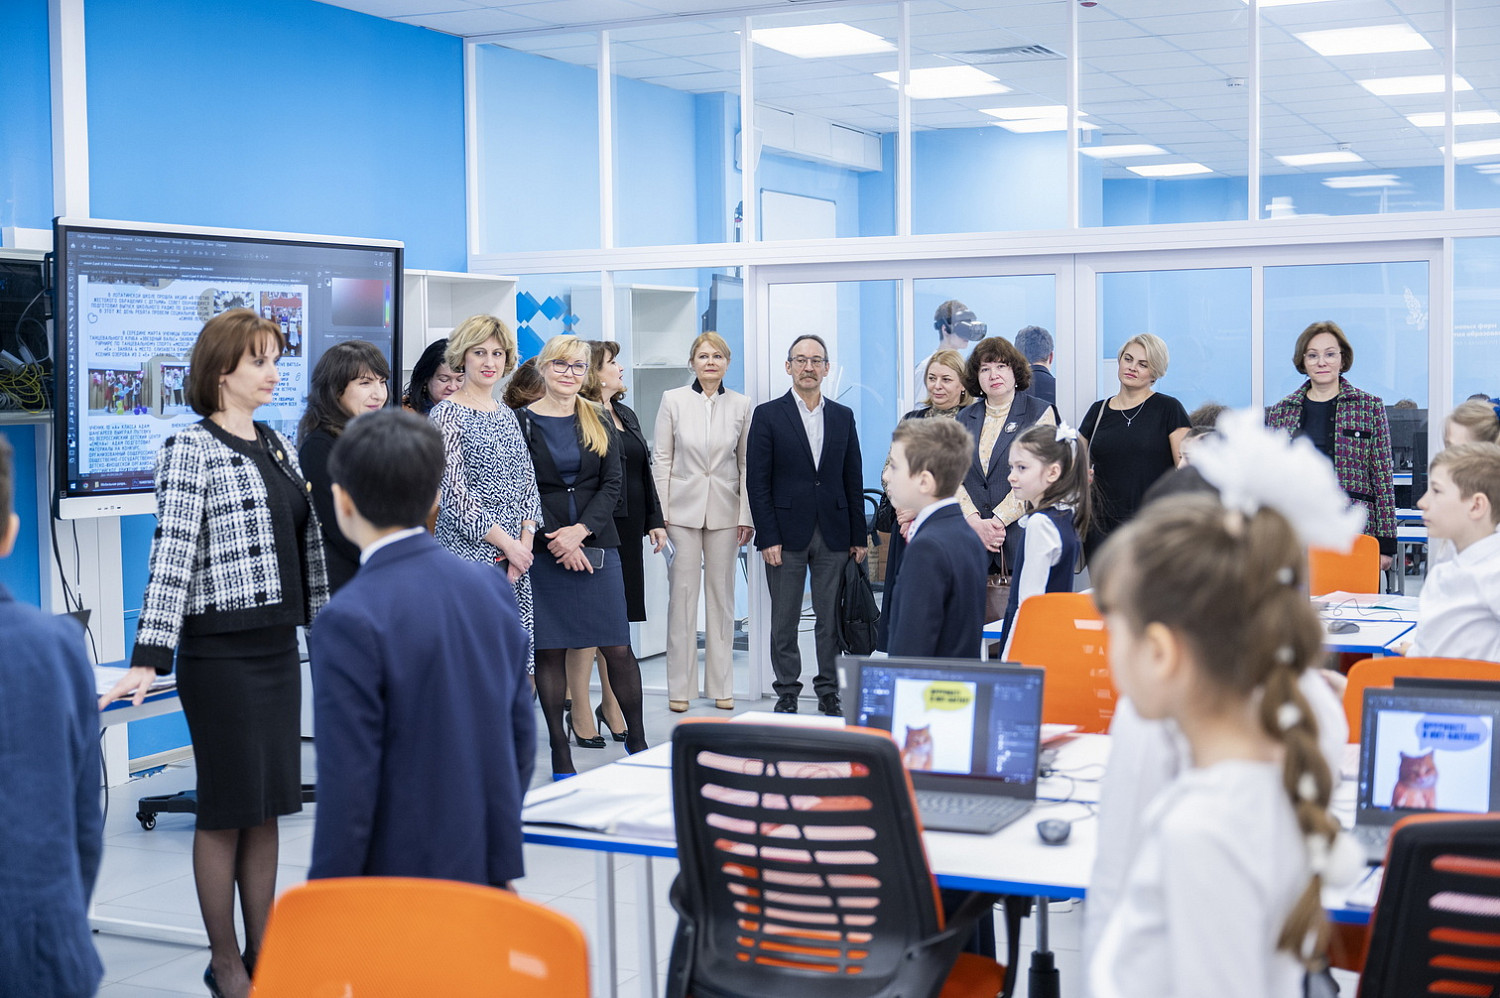 В Лопатинской школе состоялась областная конференция «Школьная медицина и здоровьесберегающие технологии в образовательном учреждении»